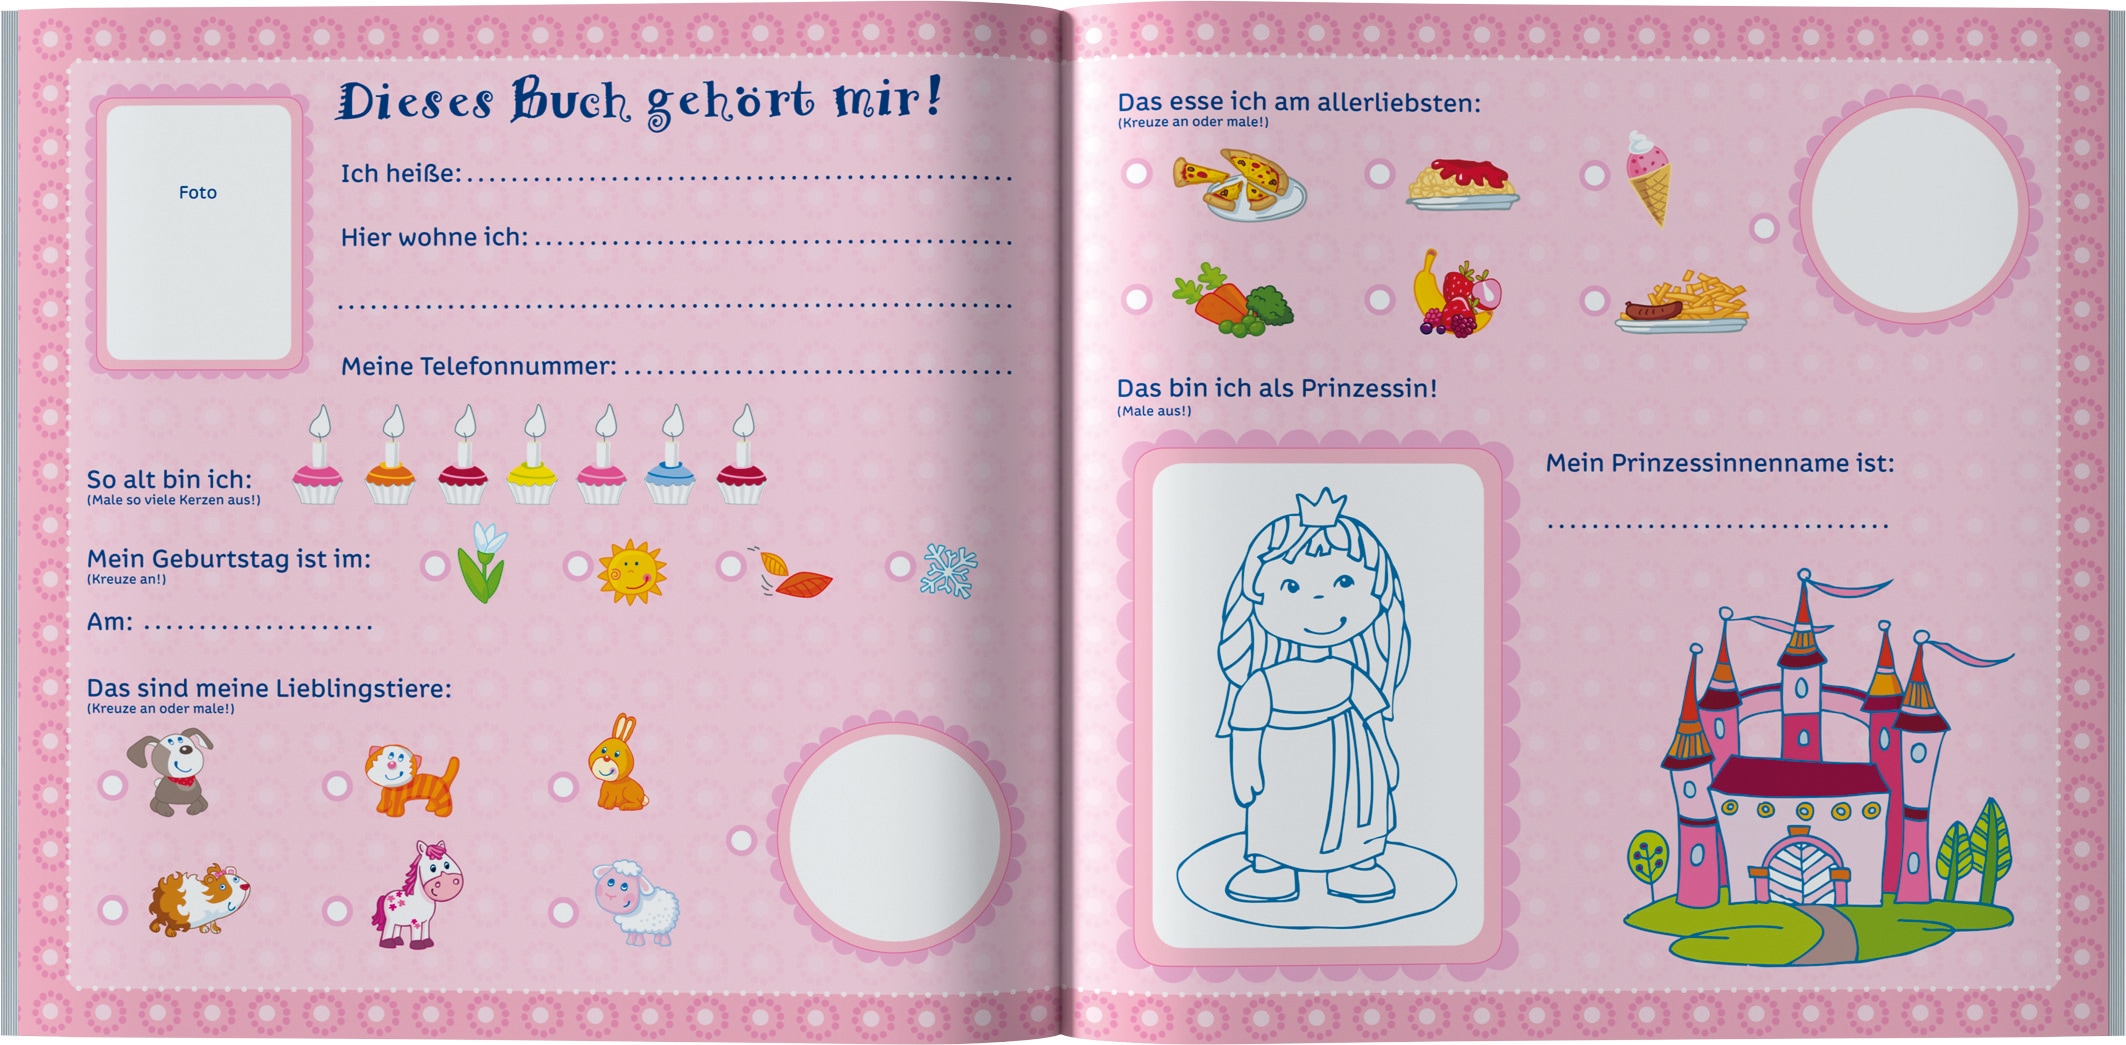 Haba Buch »Lilli and friends Freundebuch Meine Kindergarten-Freunde«